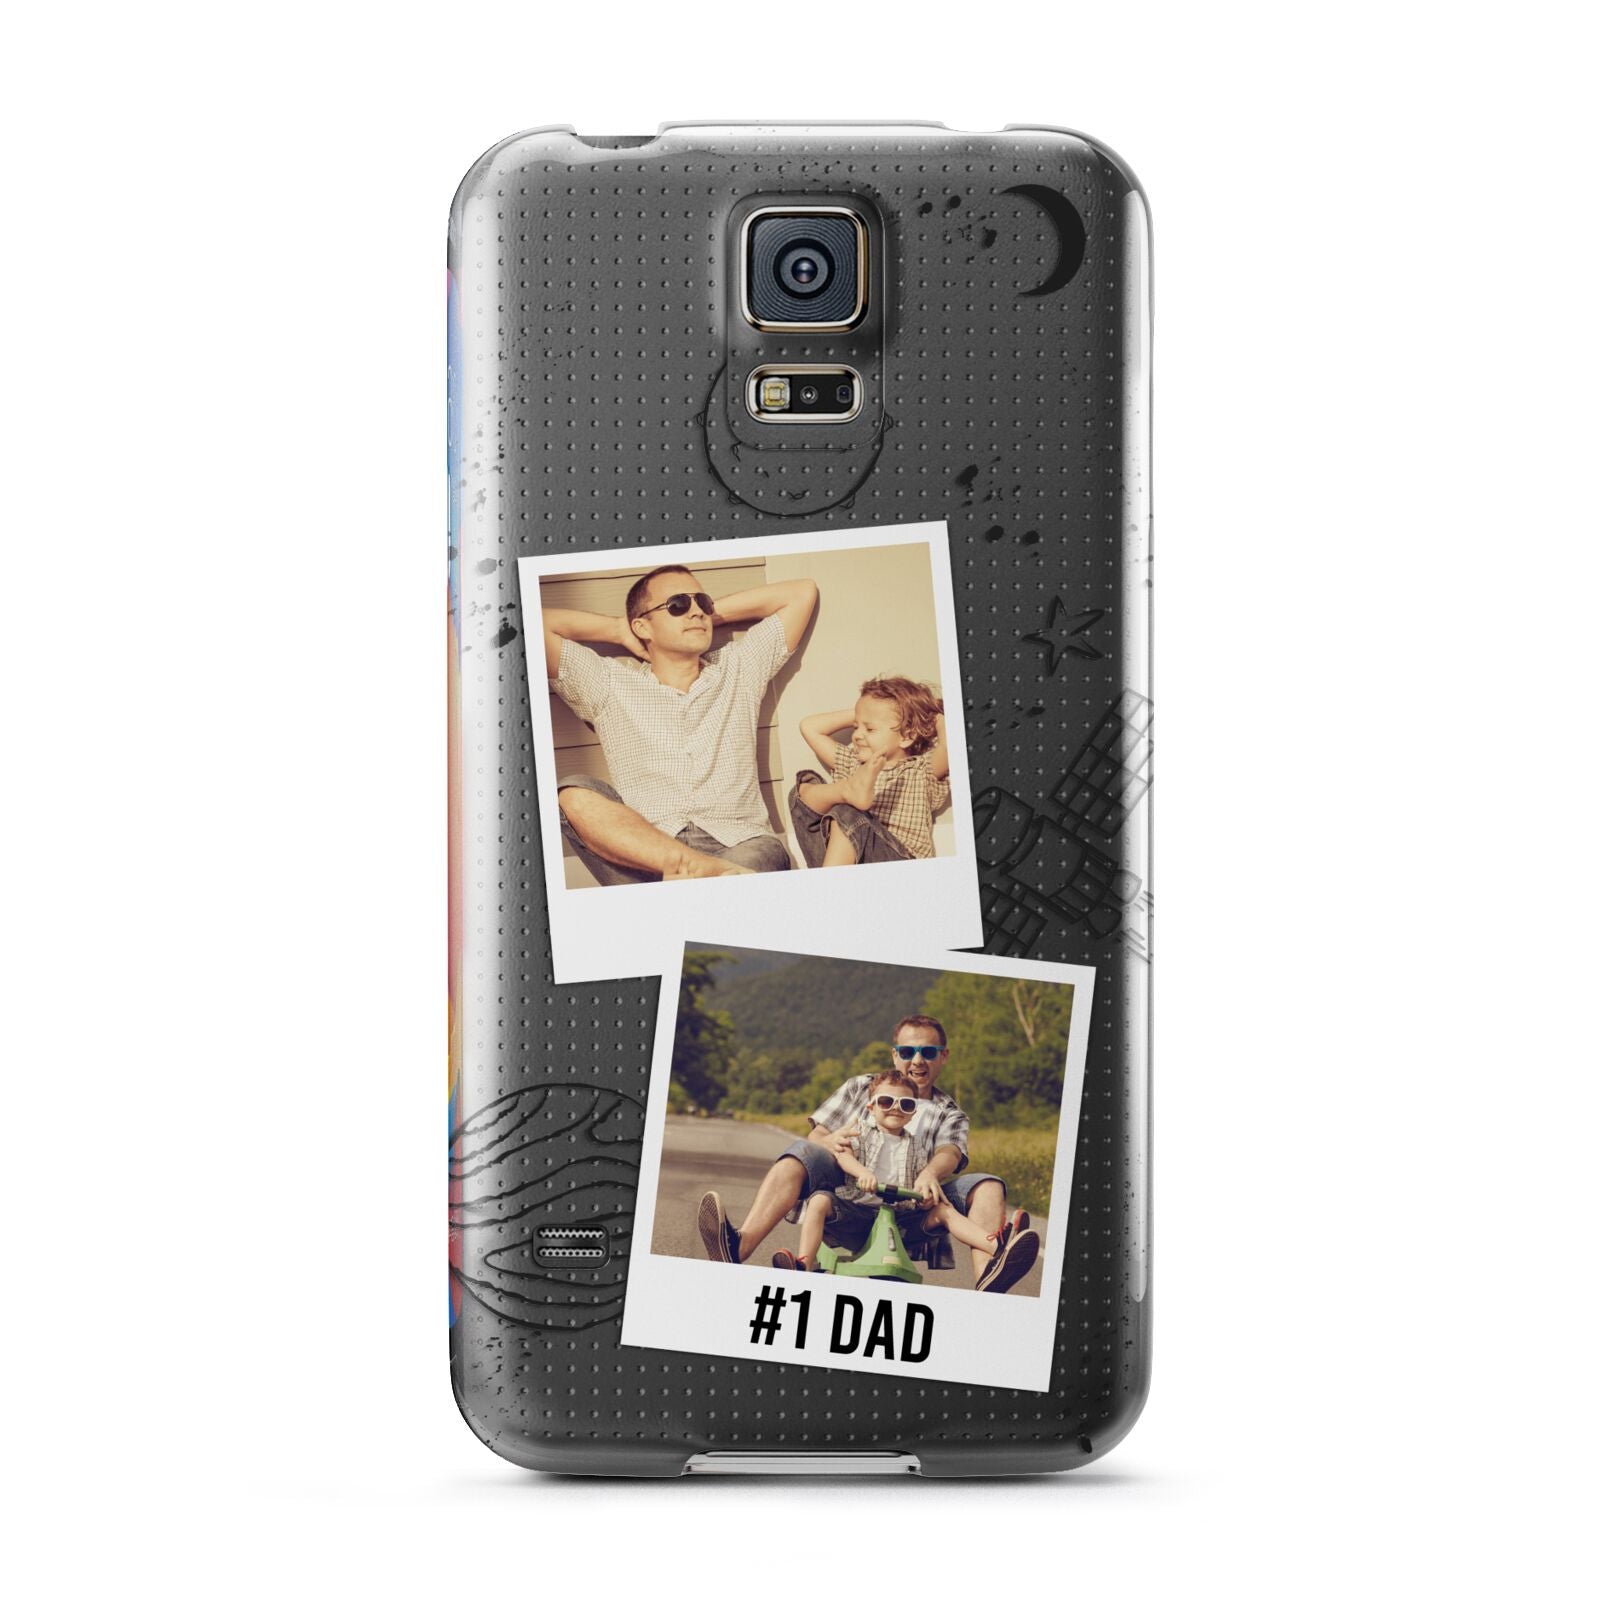 Personalised Dad Photos Samsung Galaxy S5 Case